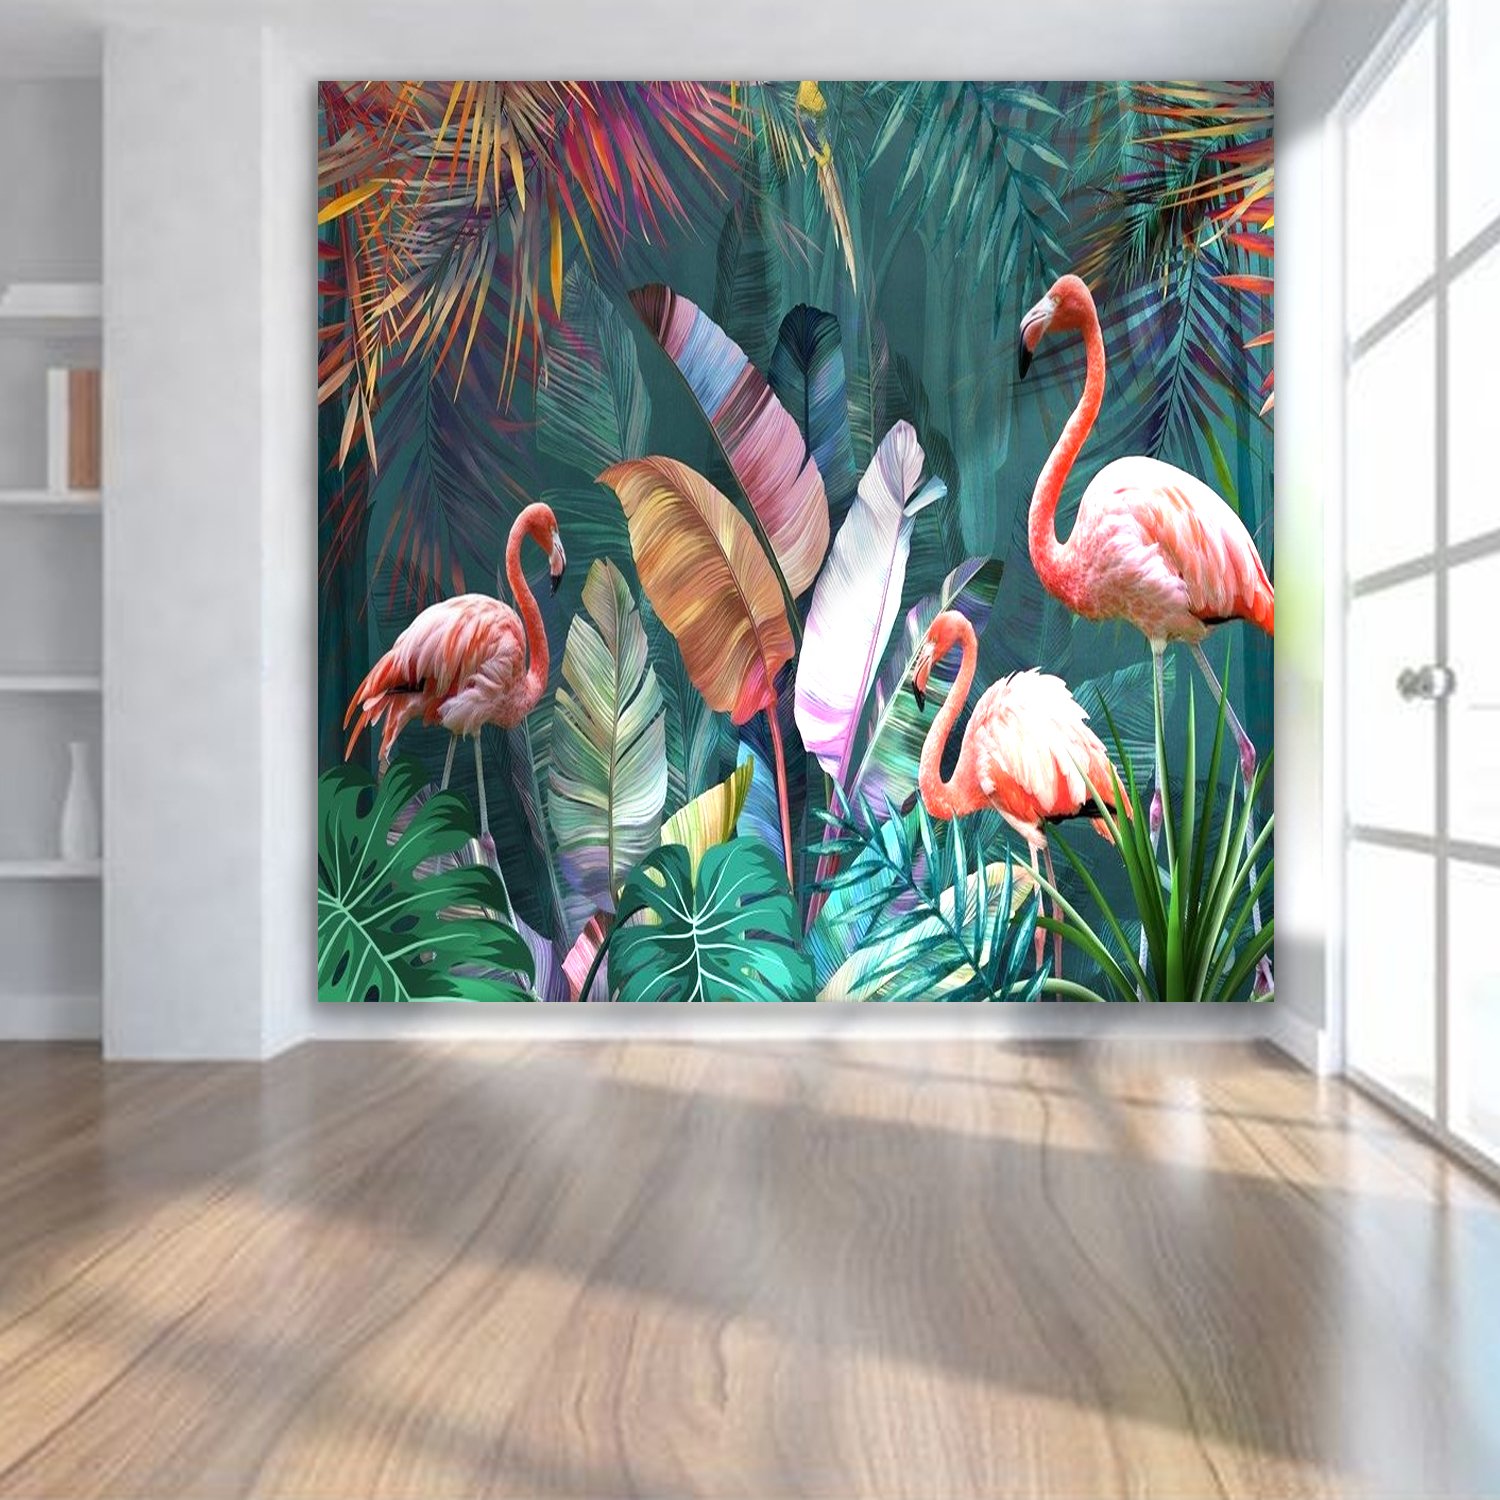 Tranh 3D phòng khách đôi chim hạc và lá xanh đặc sắc, tạo điểm nhấn cho căn nhà